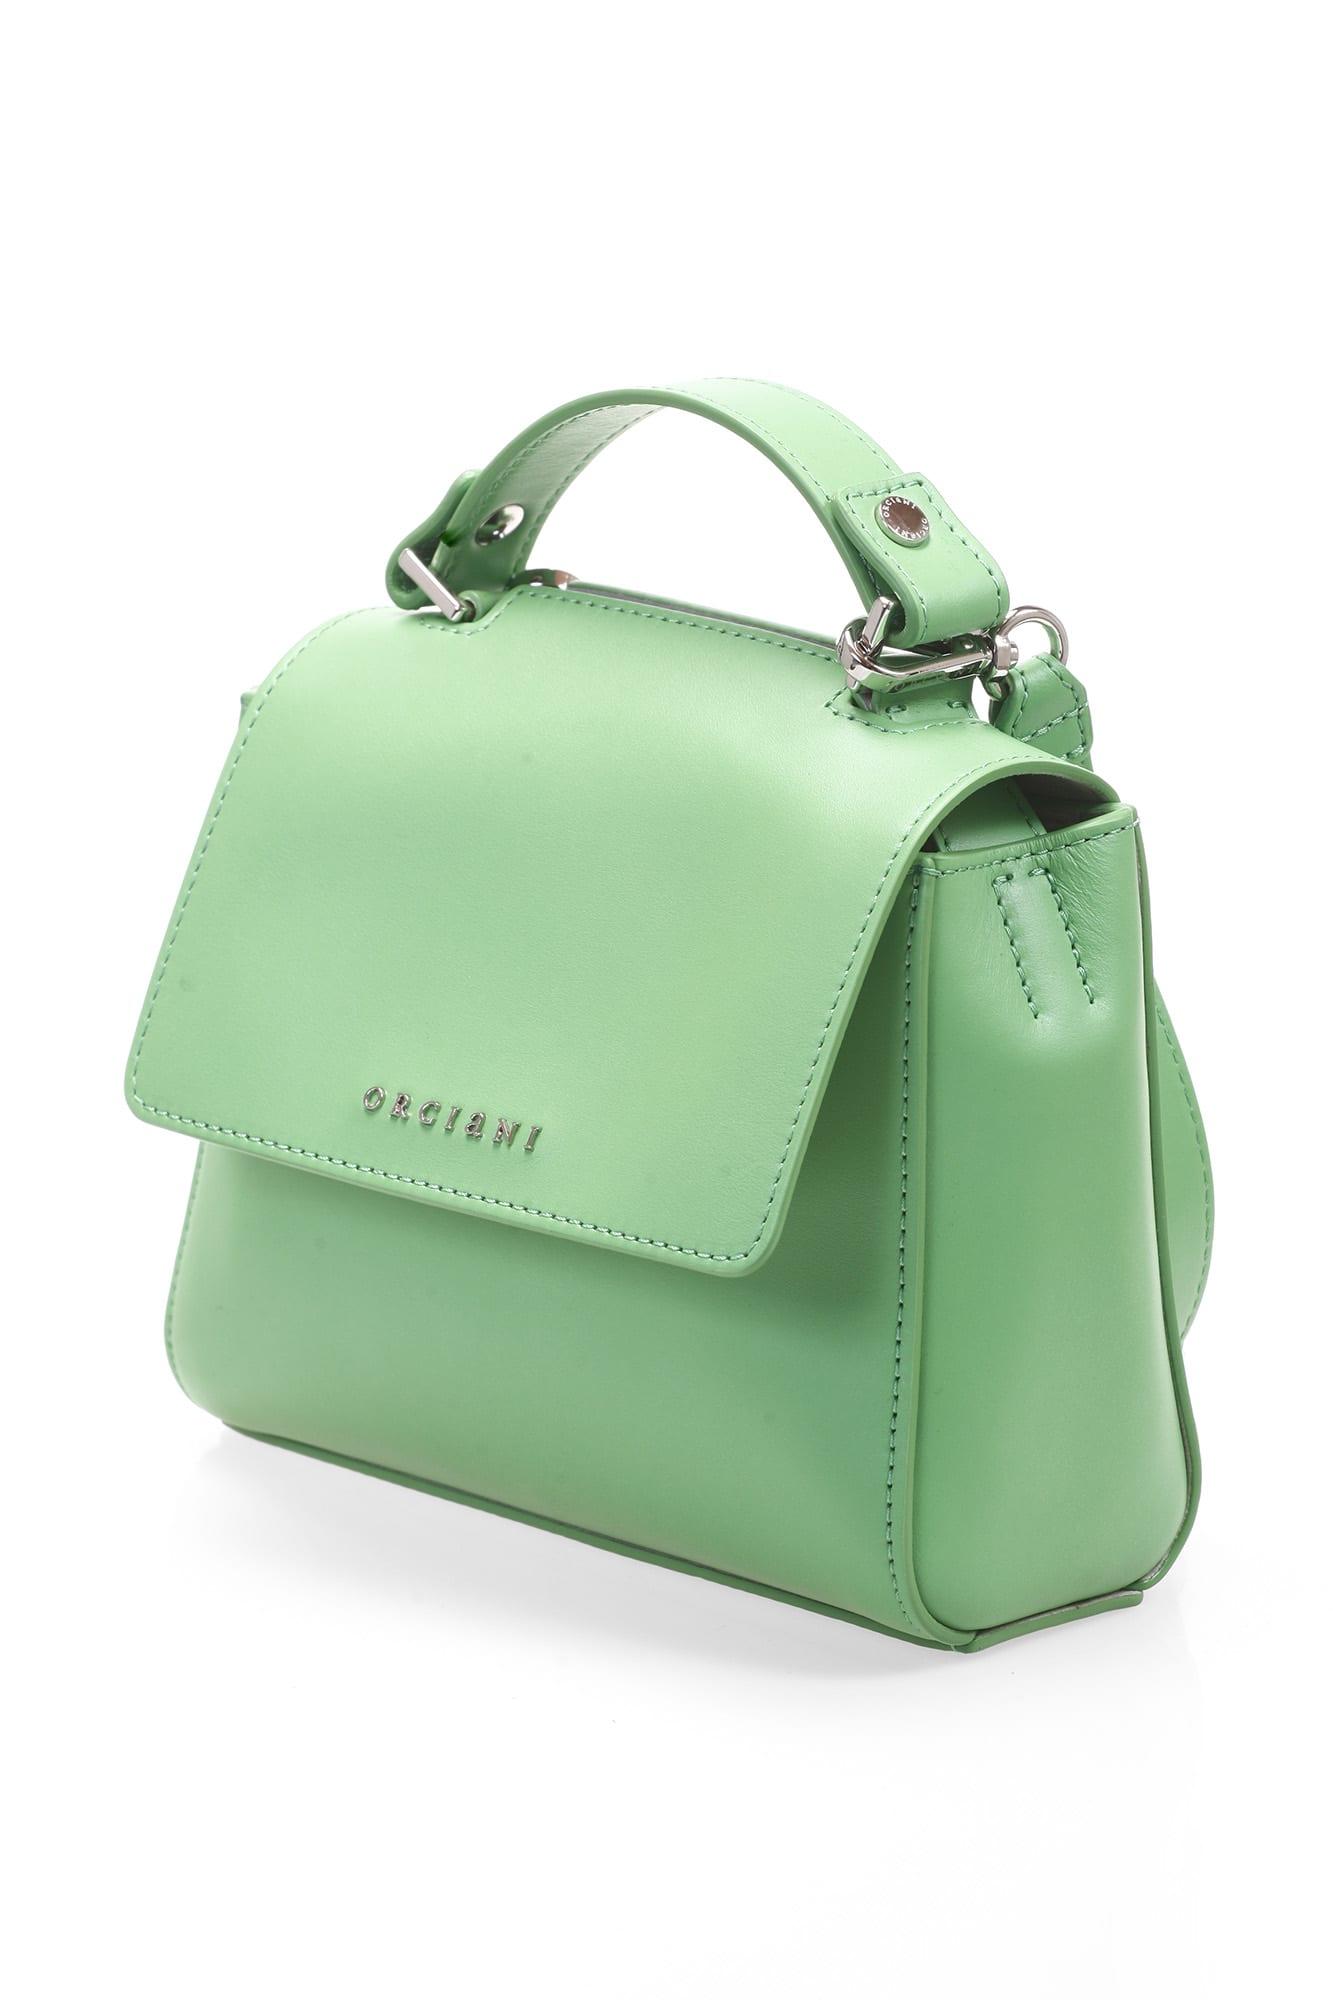 Orciani Sveva Vanity Mini Leather Handbag in Green | Lyst